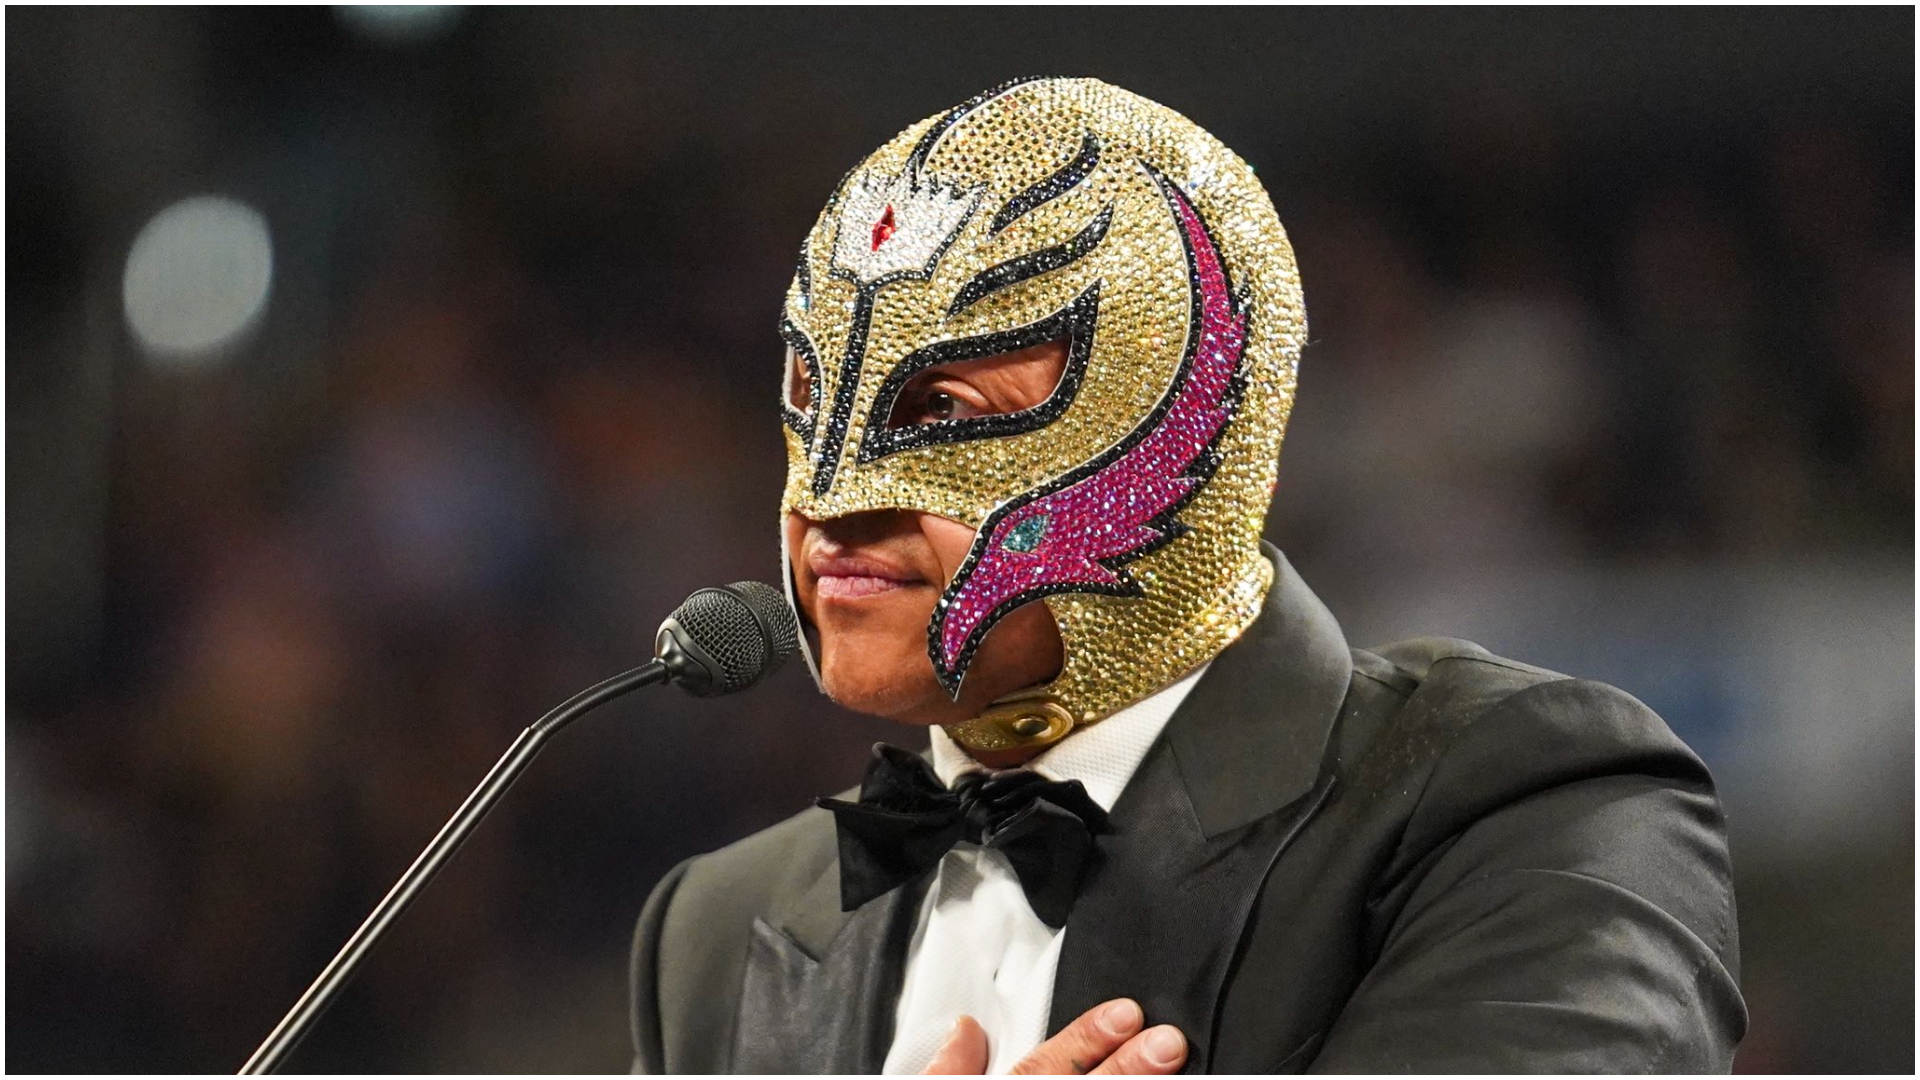 El luchador mexicano Rey Mysterio fue inducido al Hall of Fame de WWE. [Twitter/@reymysterio]